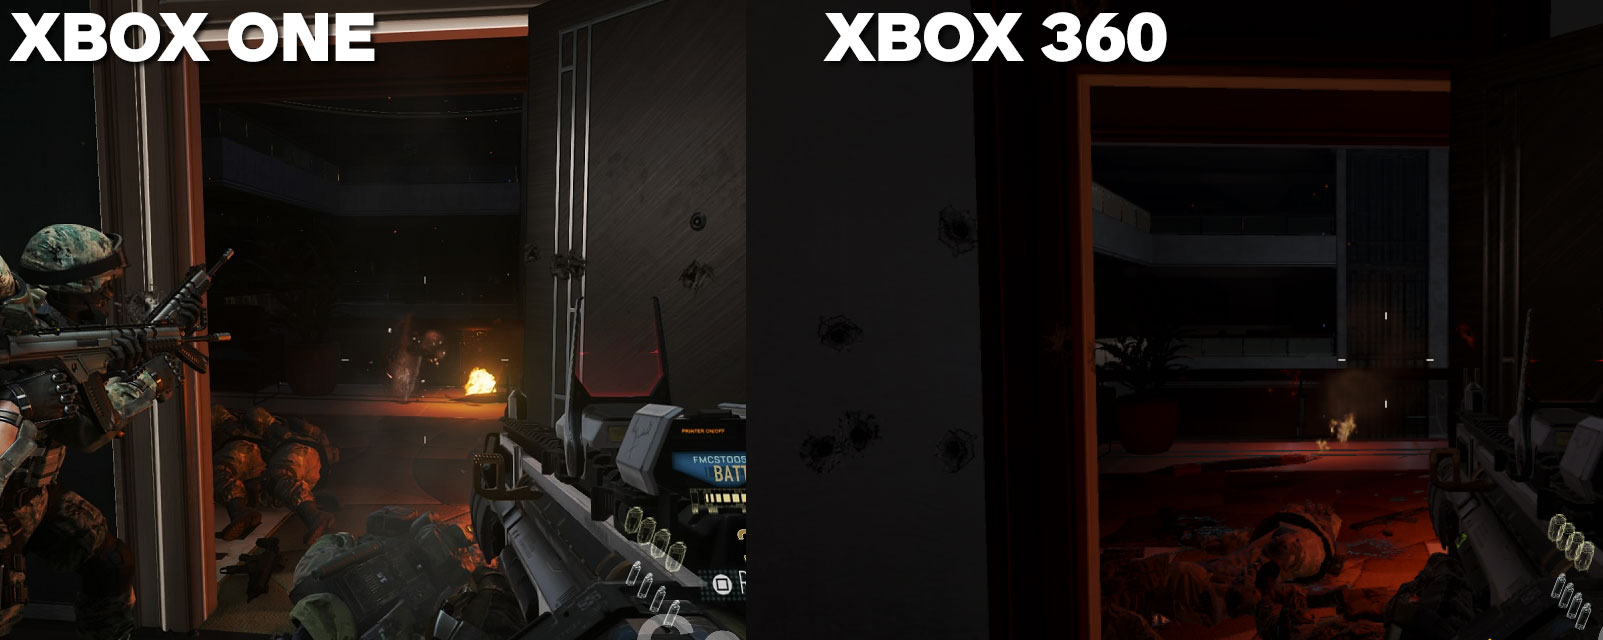 Parece que hay más elementos en Xbox One, frente a Xbox 360, en esta comparativa de Call of Duty Advanced Warfare.